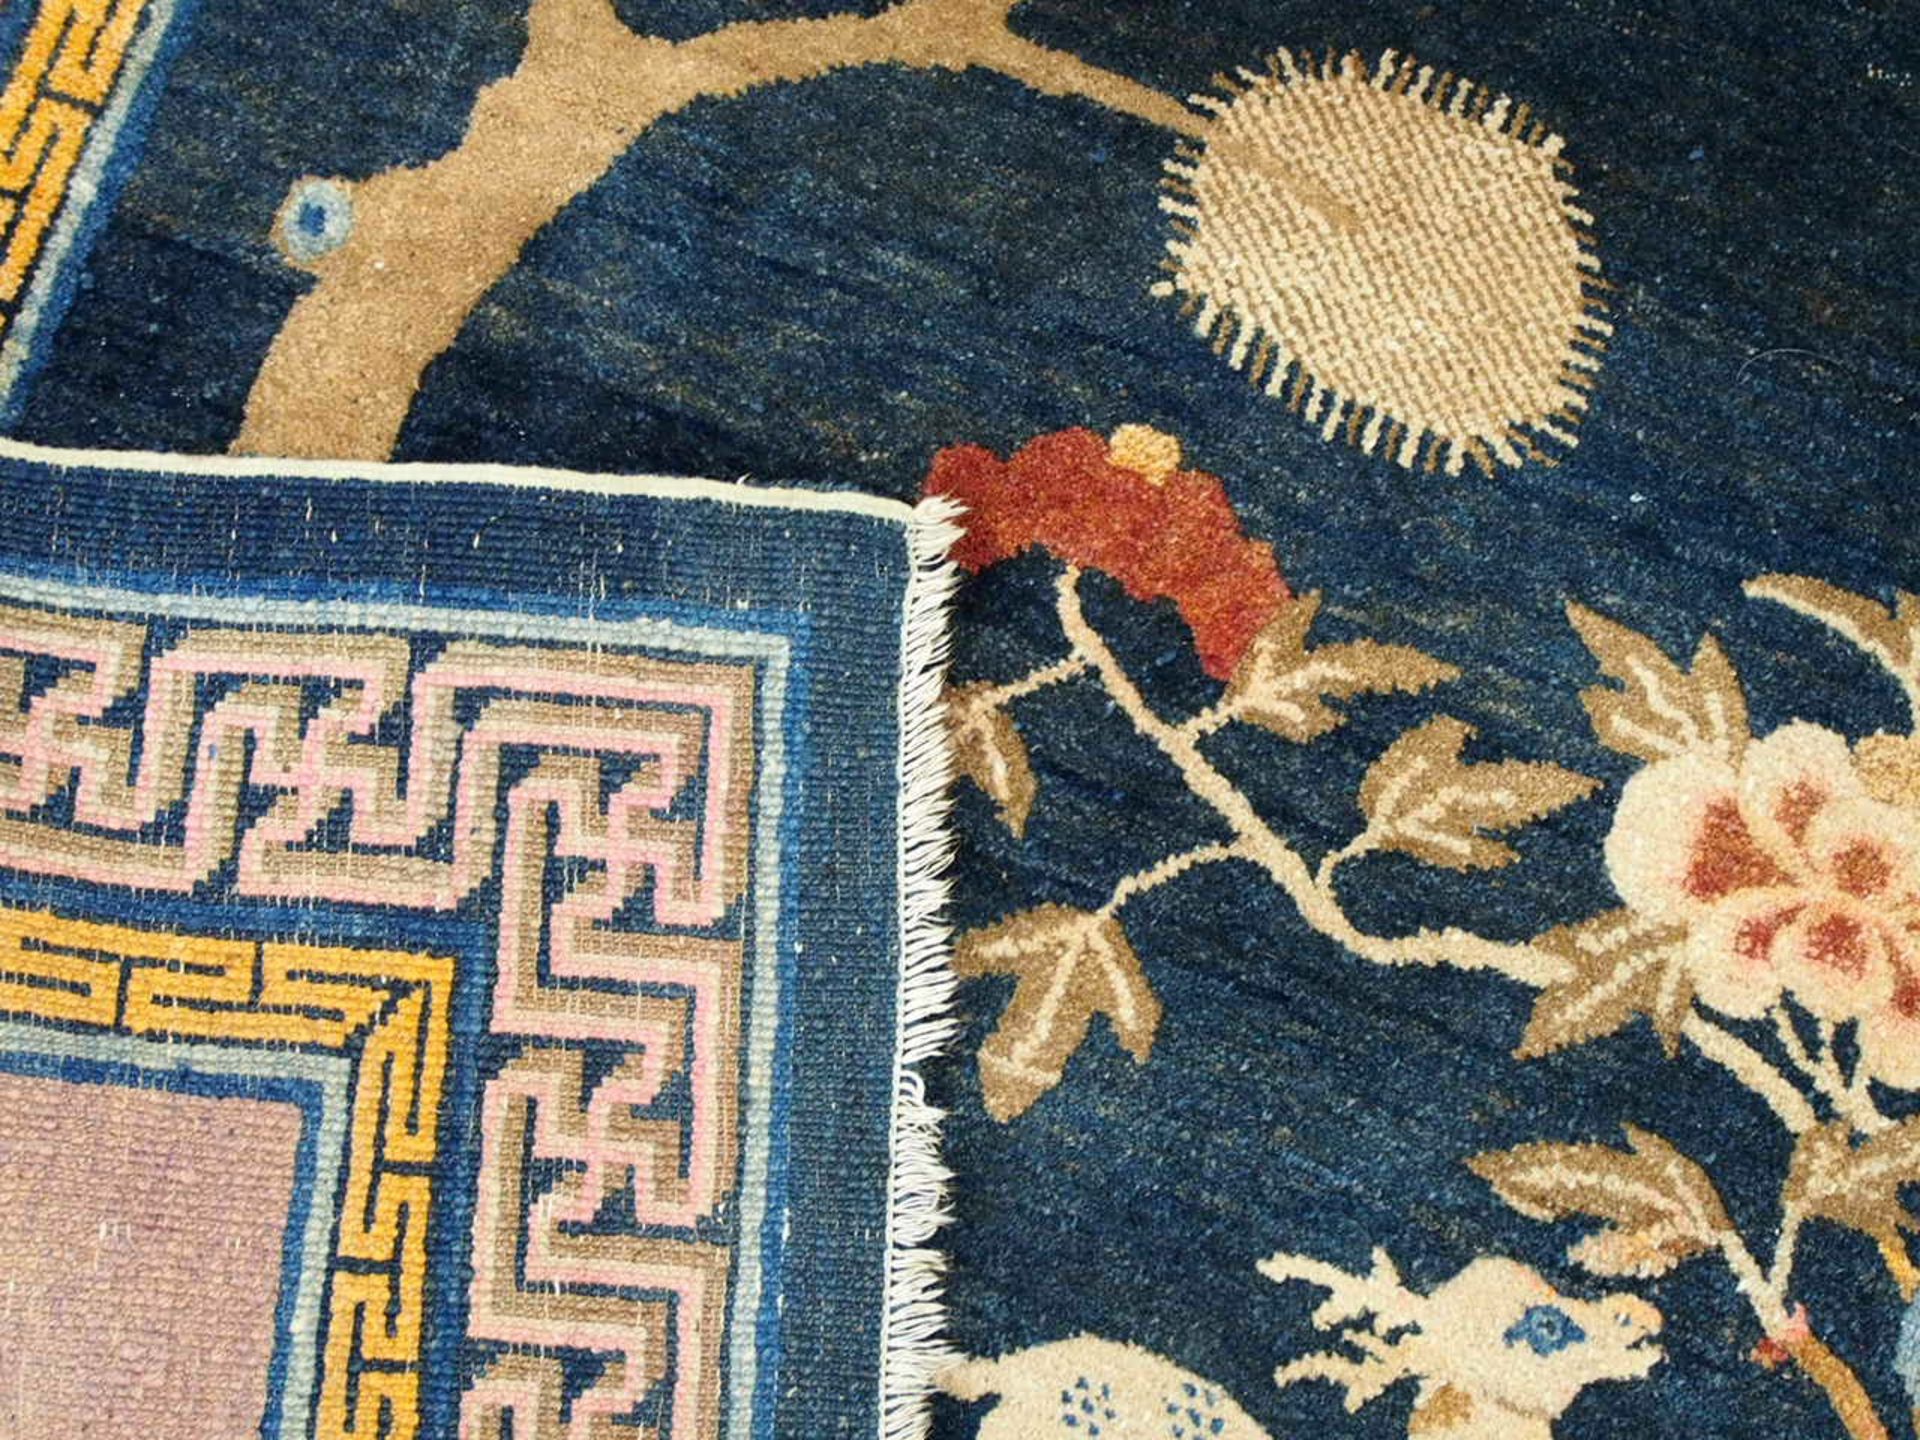 Teppich China, 128 x 200 cm, Zustand B/C, um 1900 - Bild 2 aus 3